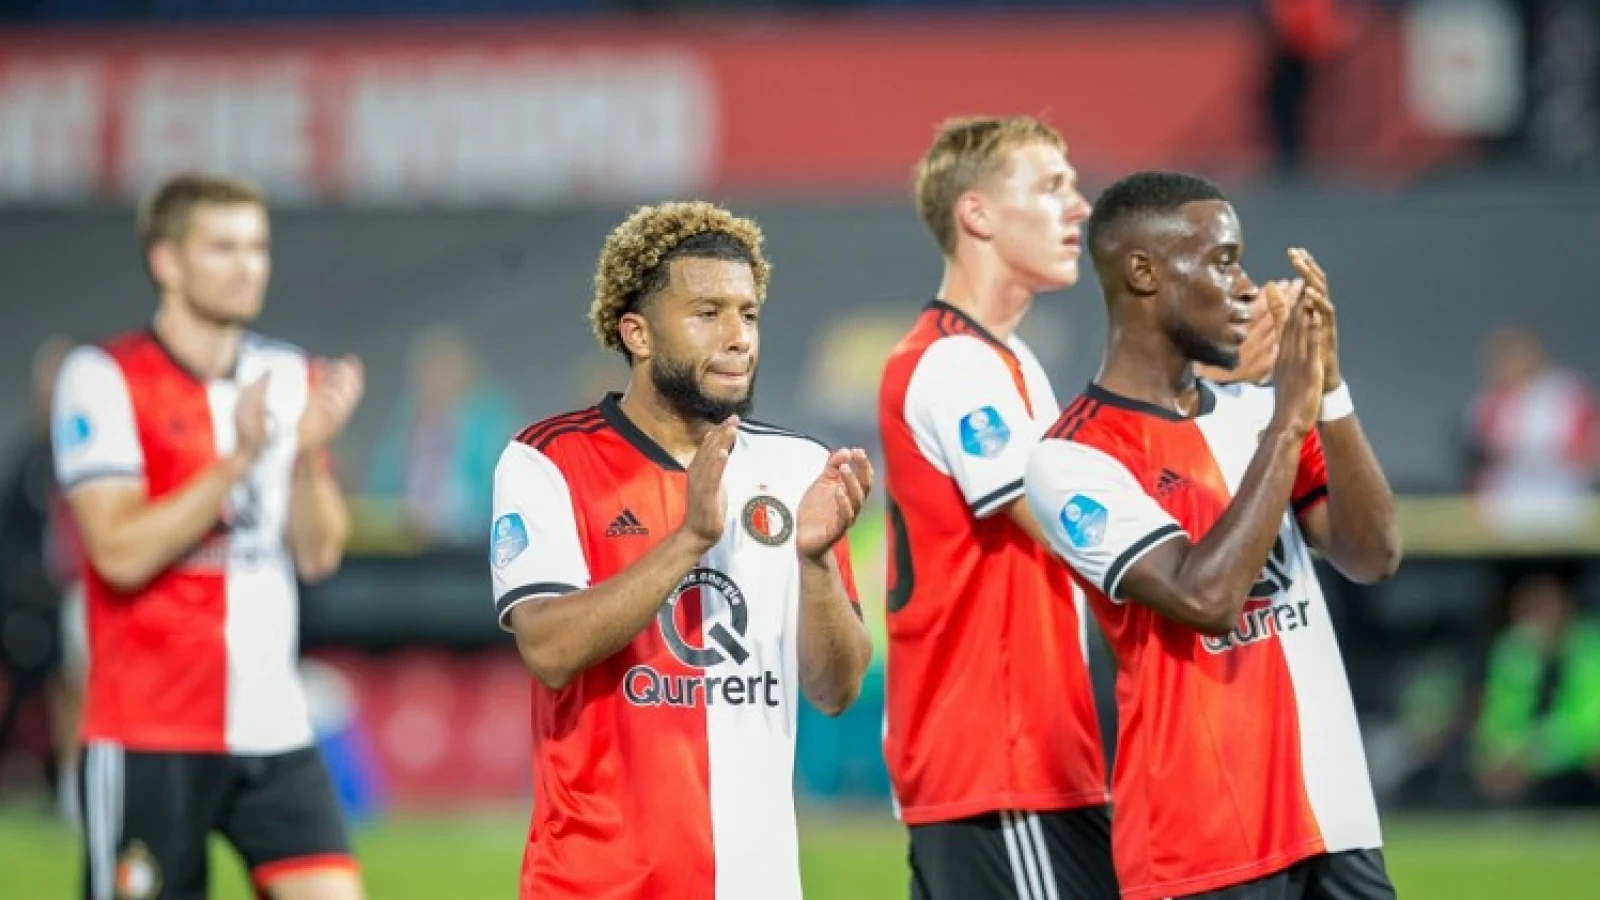 Leegte op donderdag: 'Met name voor Feyenoord en AZ was dat een blamage’